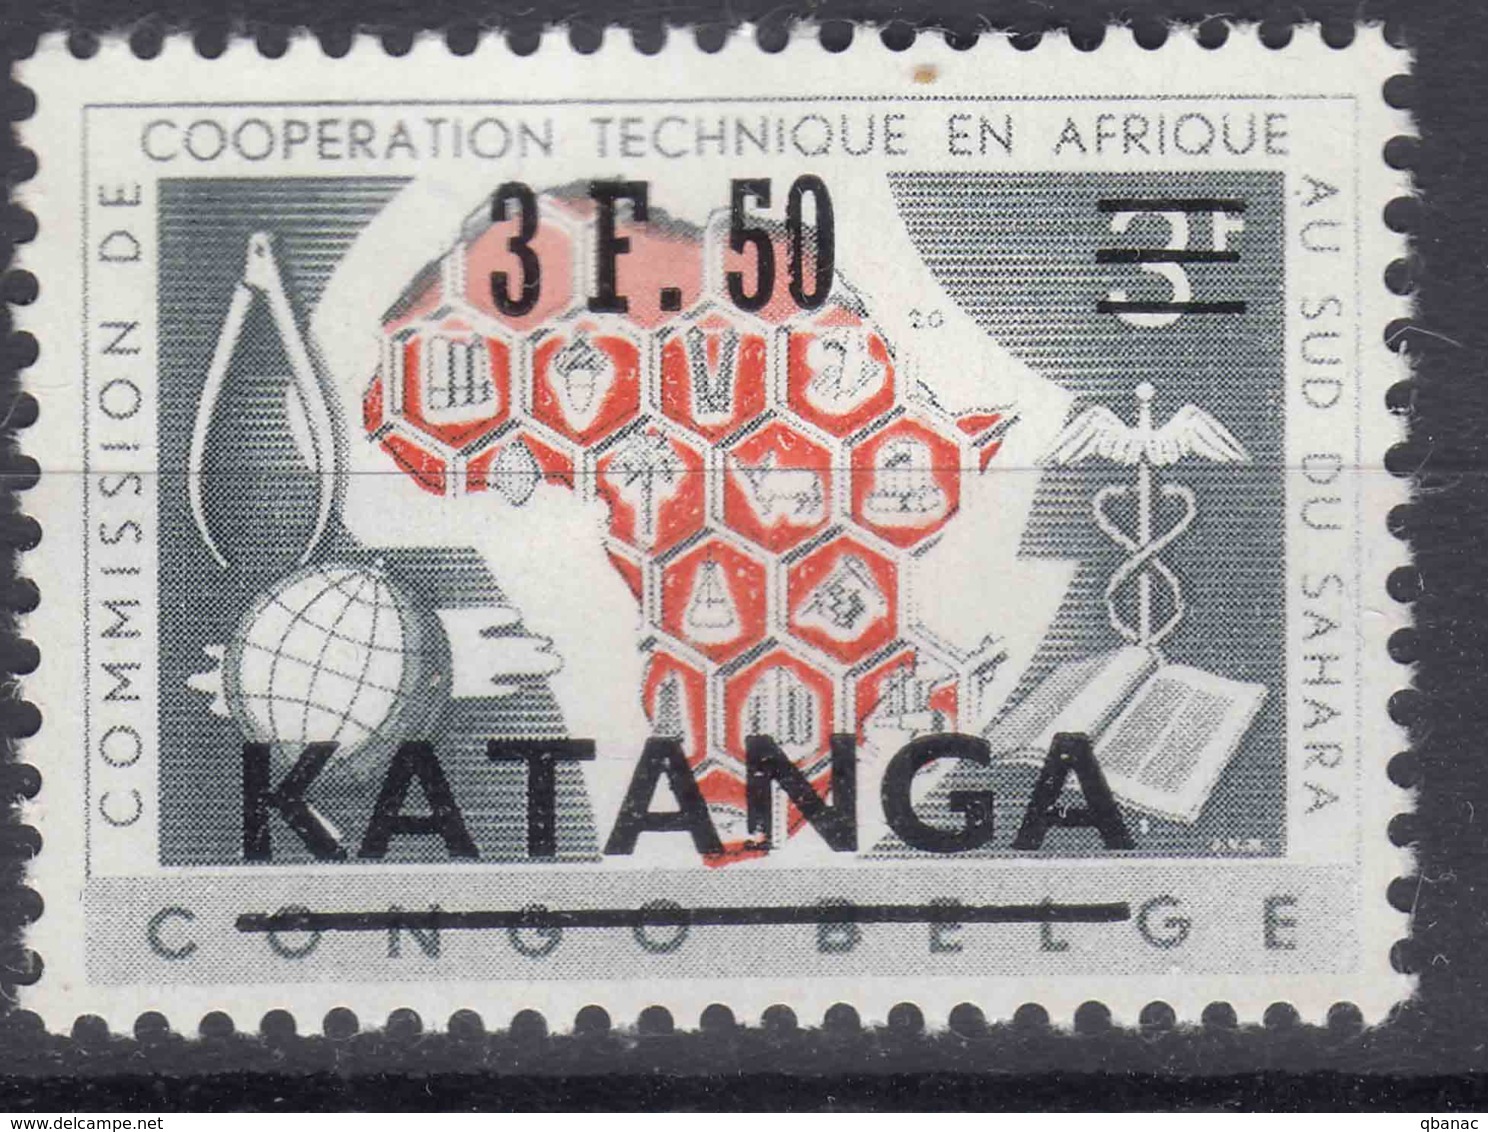 Belgium Colonies Katanga 1961 Mi#50 Mint Hinged - Katanga